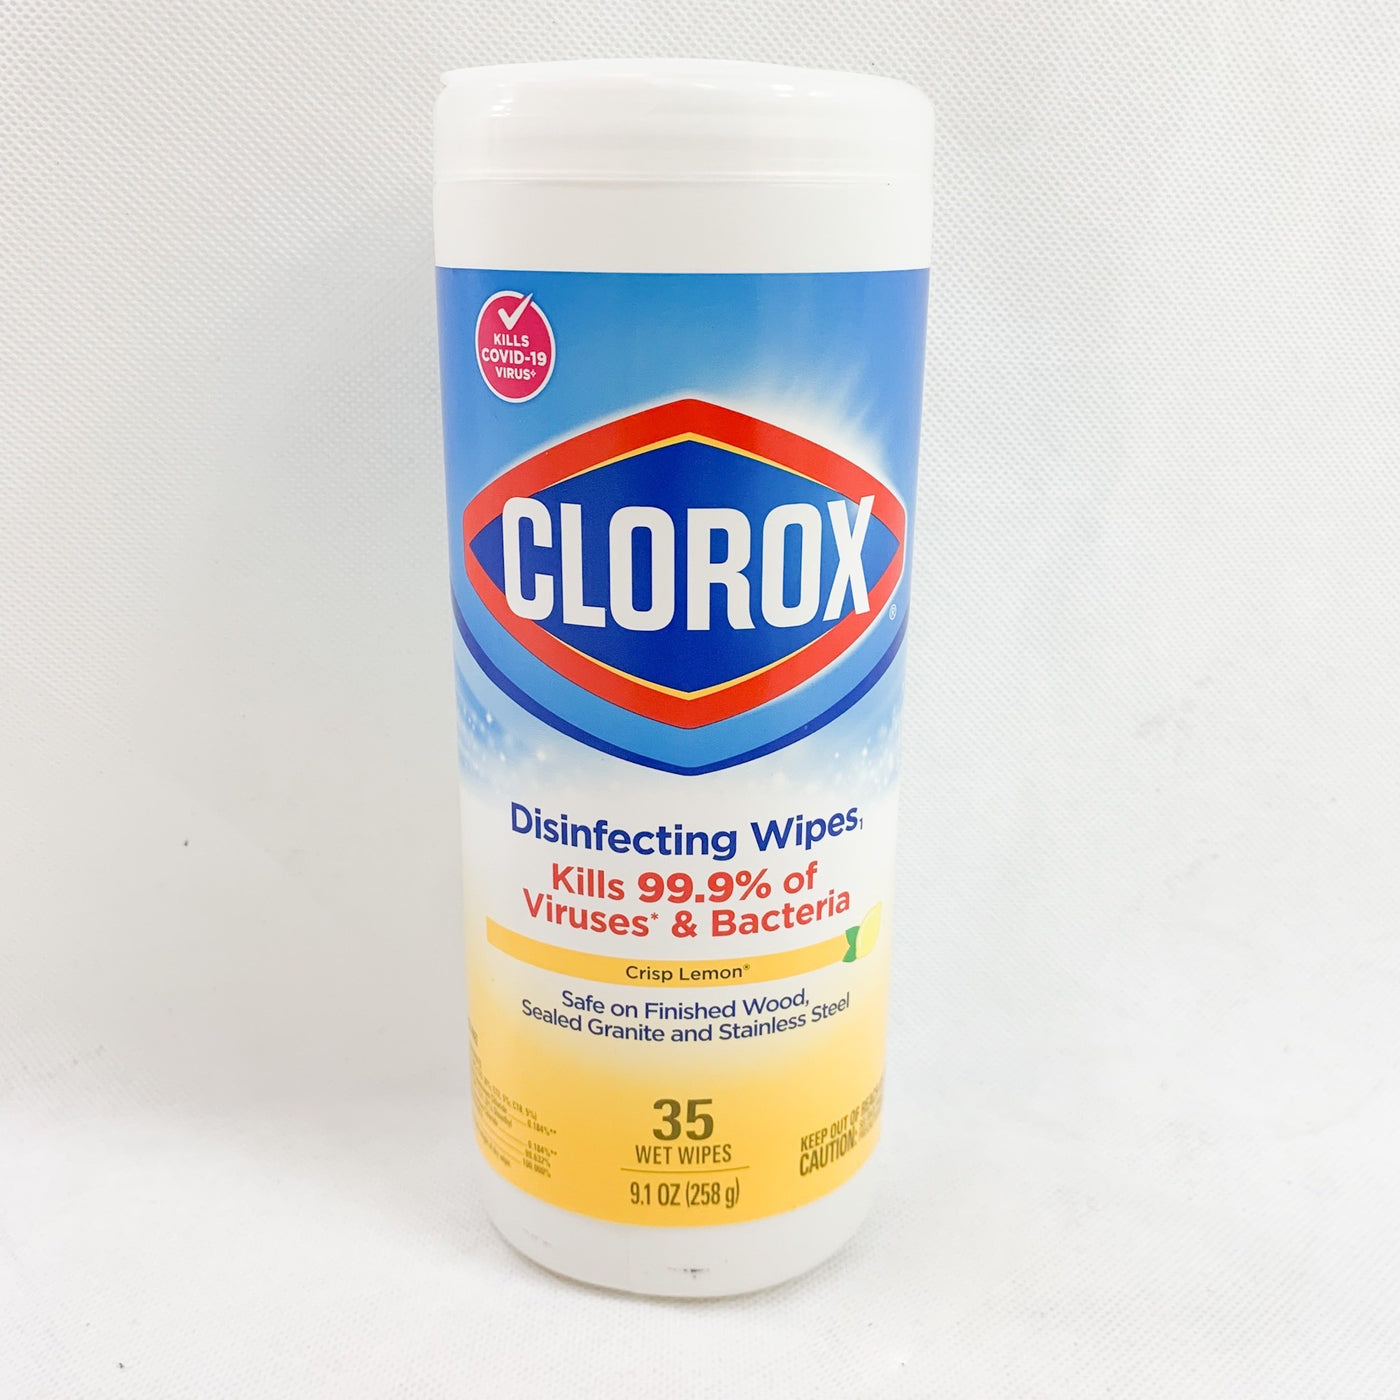 Clorox Disinfecting Wipes 35ct Crisp lemon